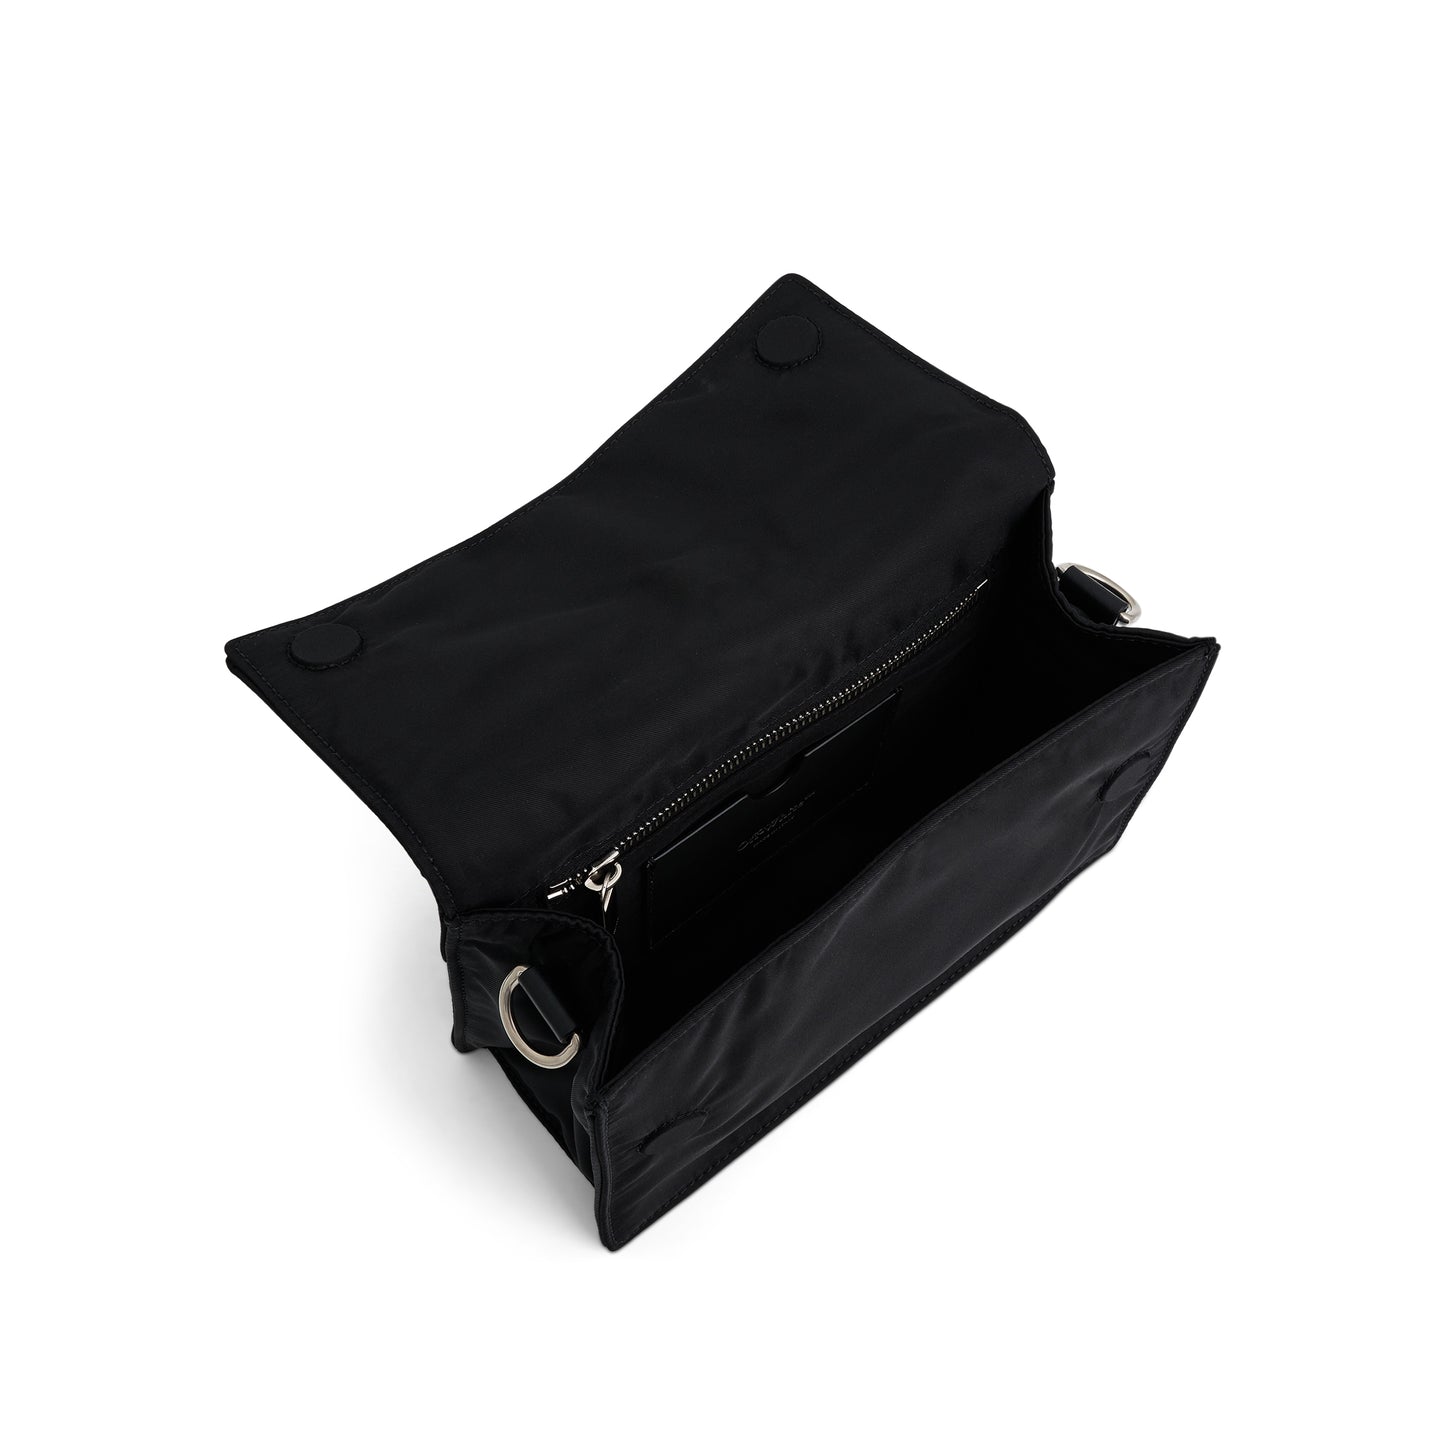 Soft Jitney 1.4 Simple Nylon Bag in Black